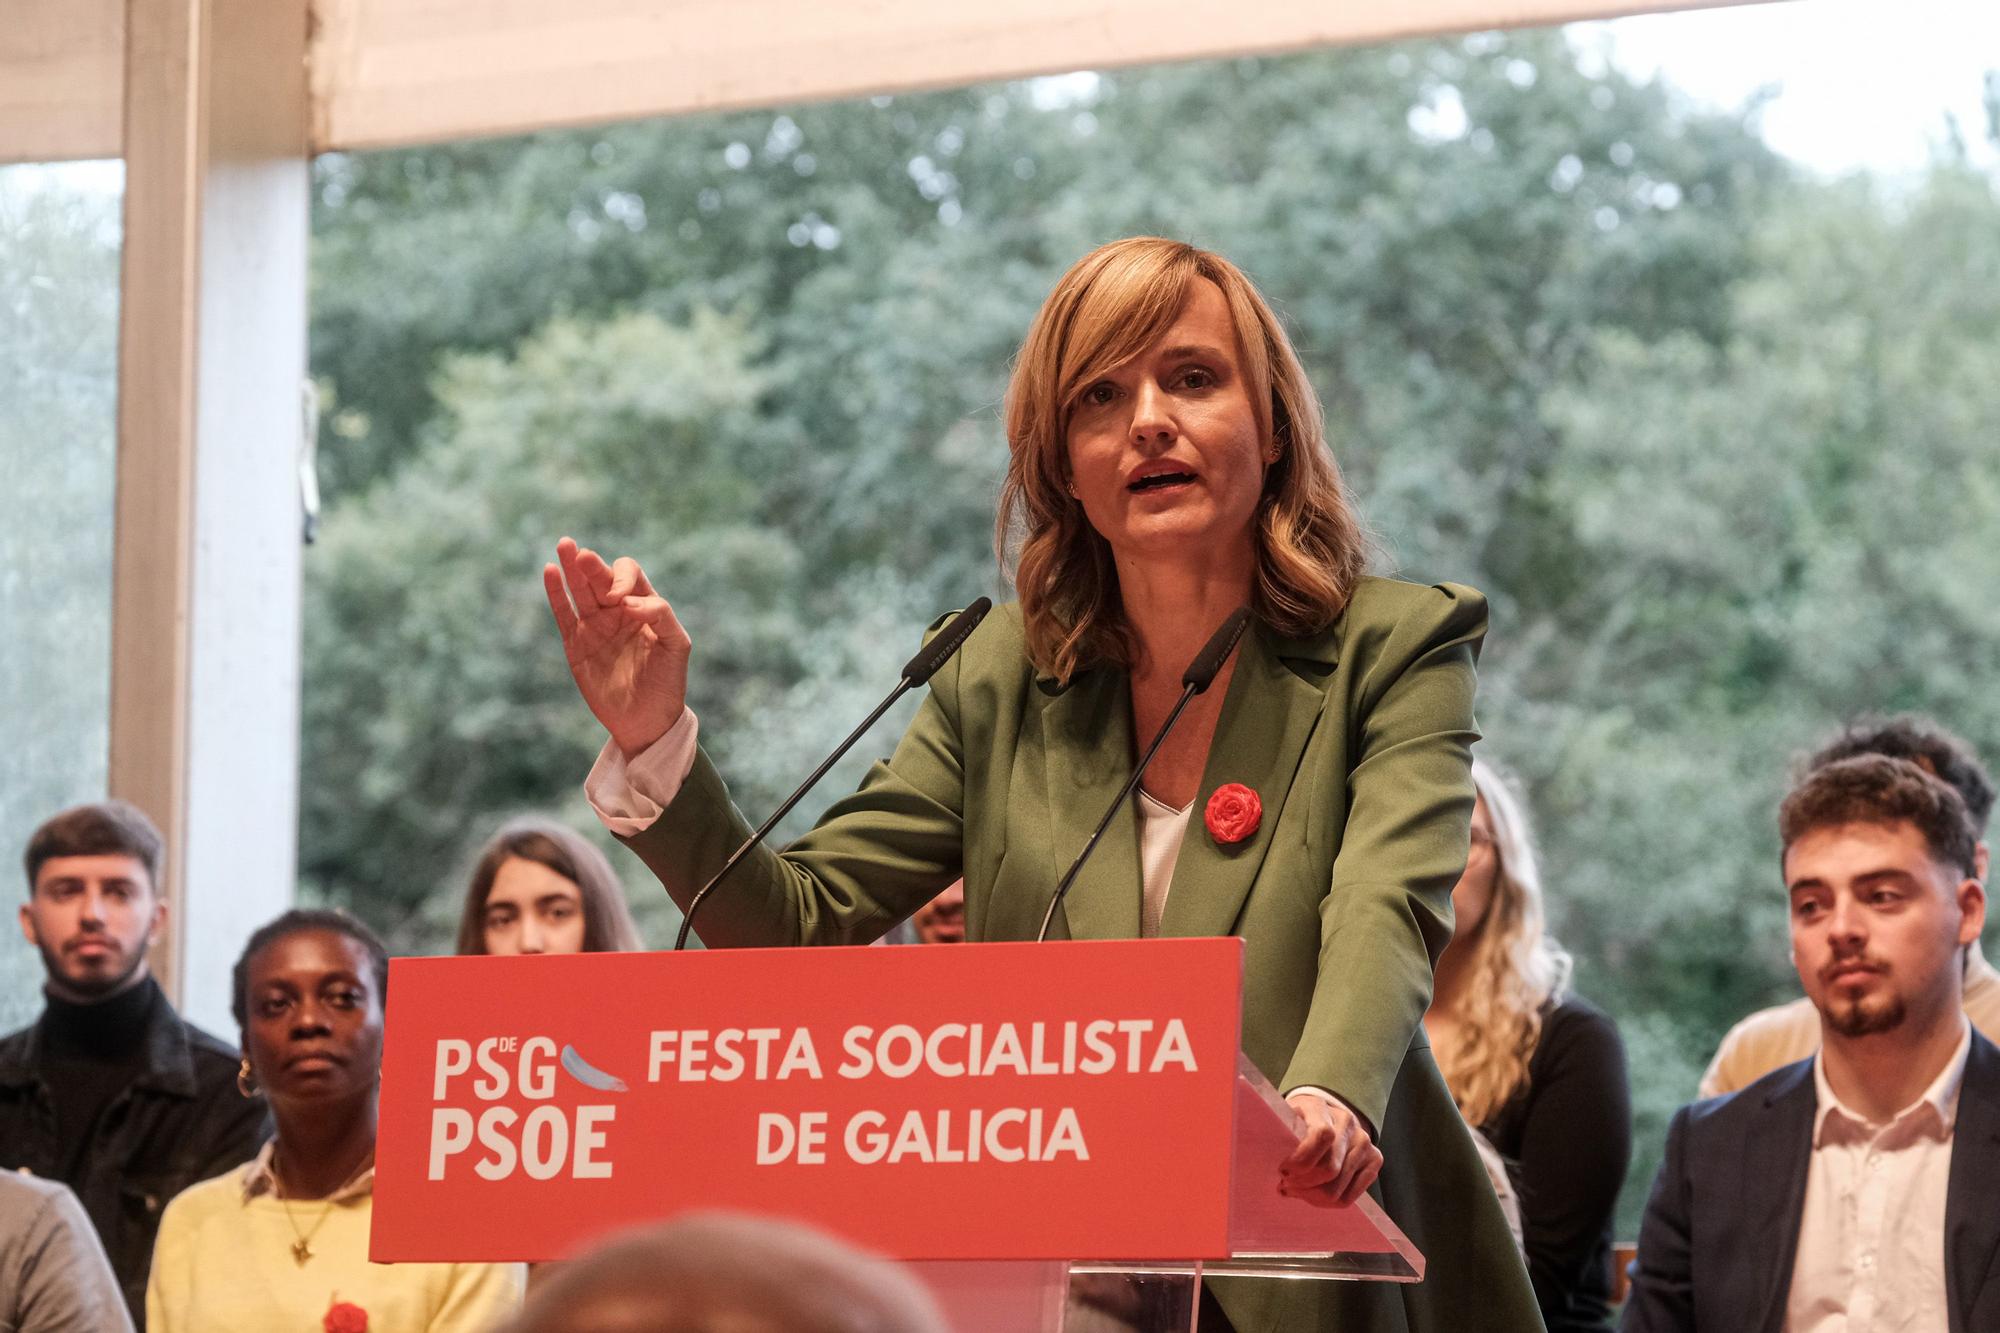 Fiesta de los socialistas gallegos en Siguieiro